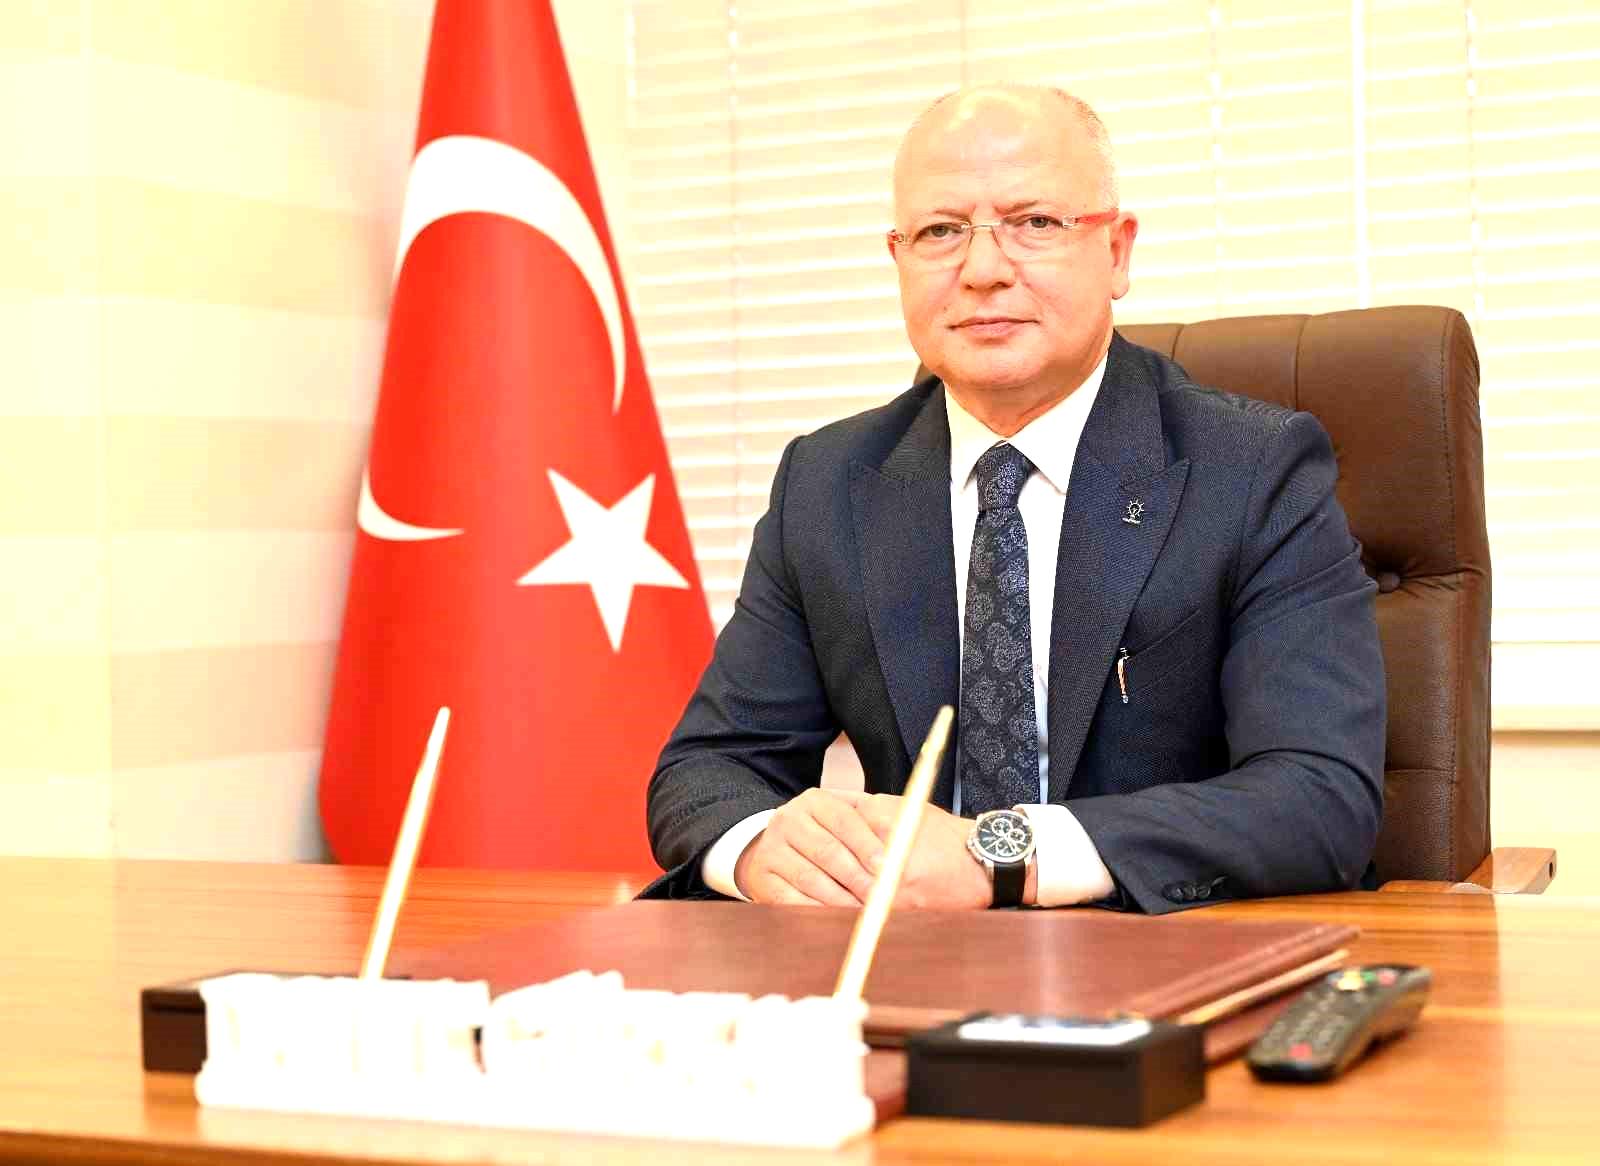 AK Parti İl Başkanı Davut Gürkan: “Gazeteciler, toplumun gözü, kulağı ve söyleyen dilidir”